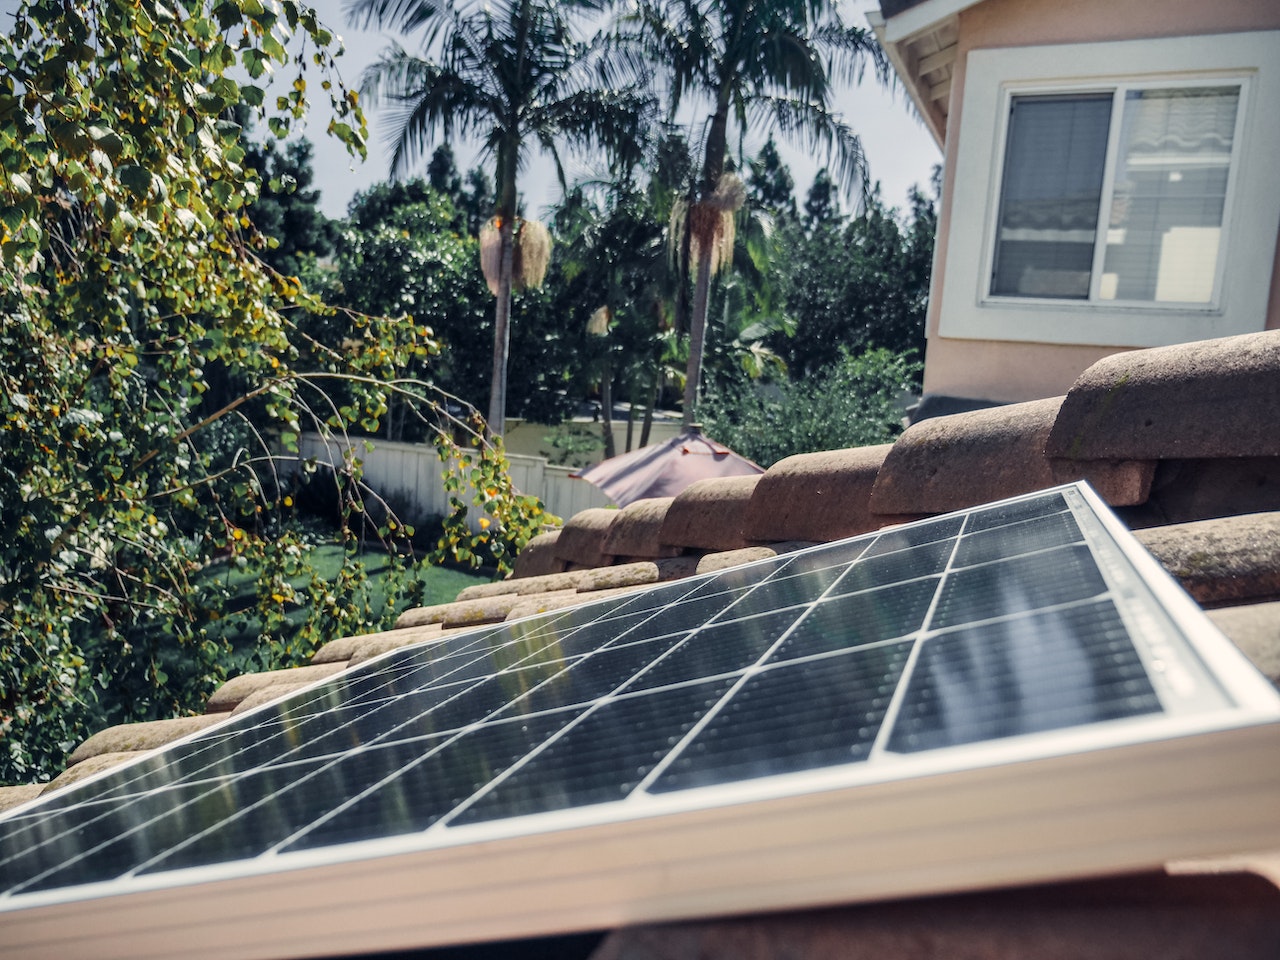 Comment les panneaux solaires peuvent aider à réduire votre facture d’électricité